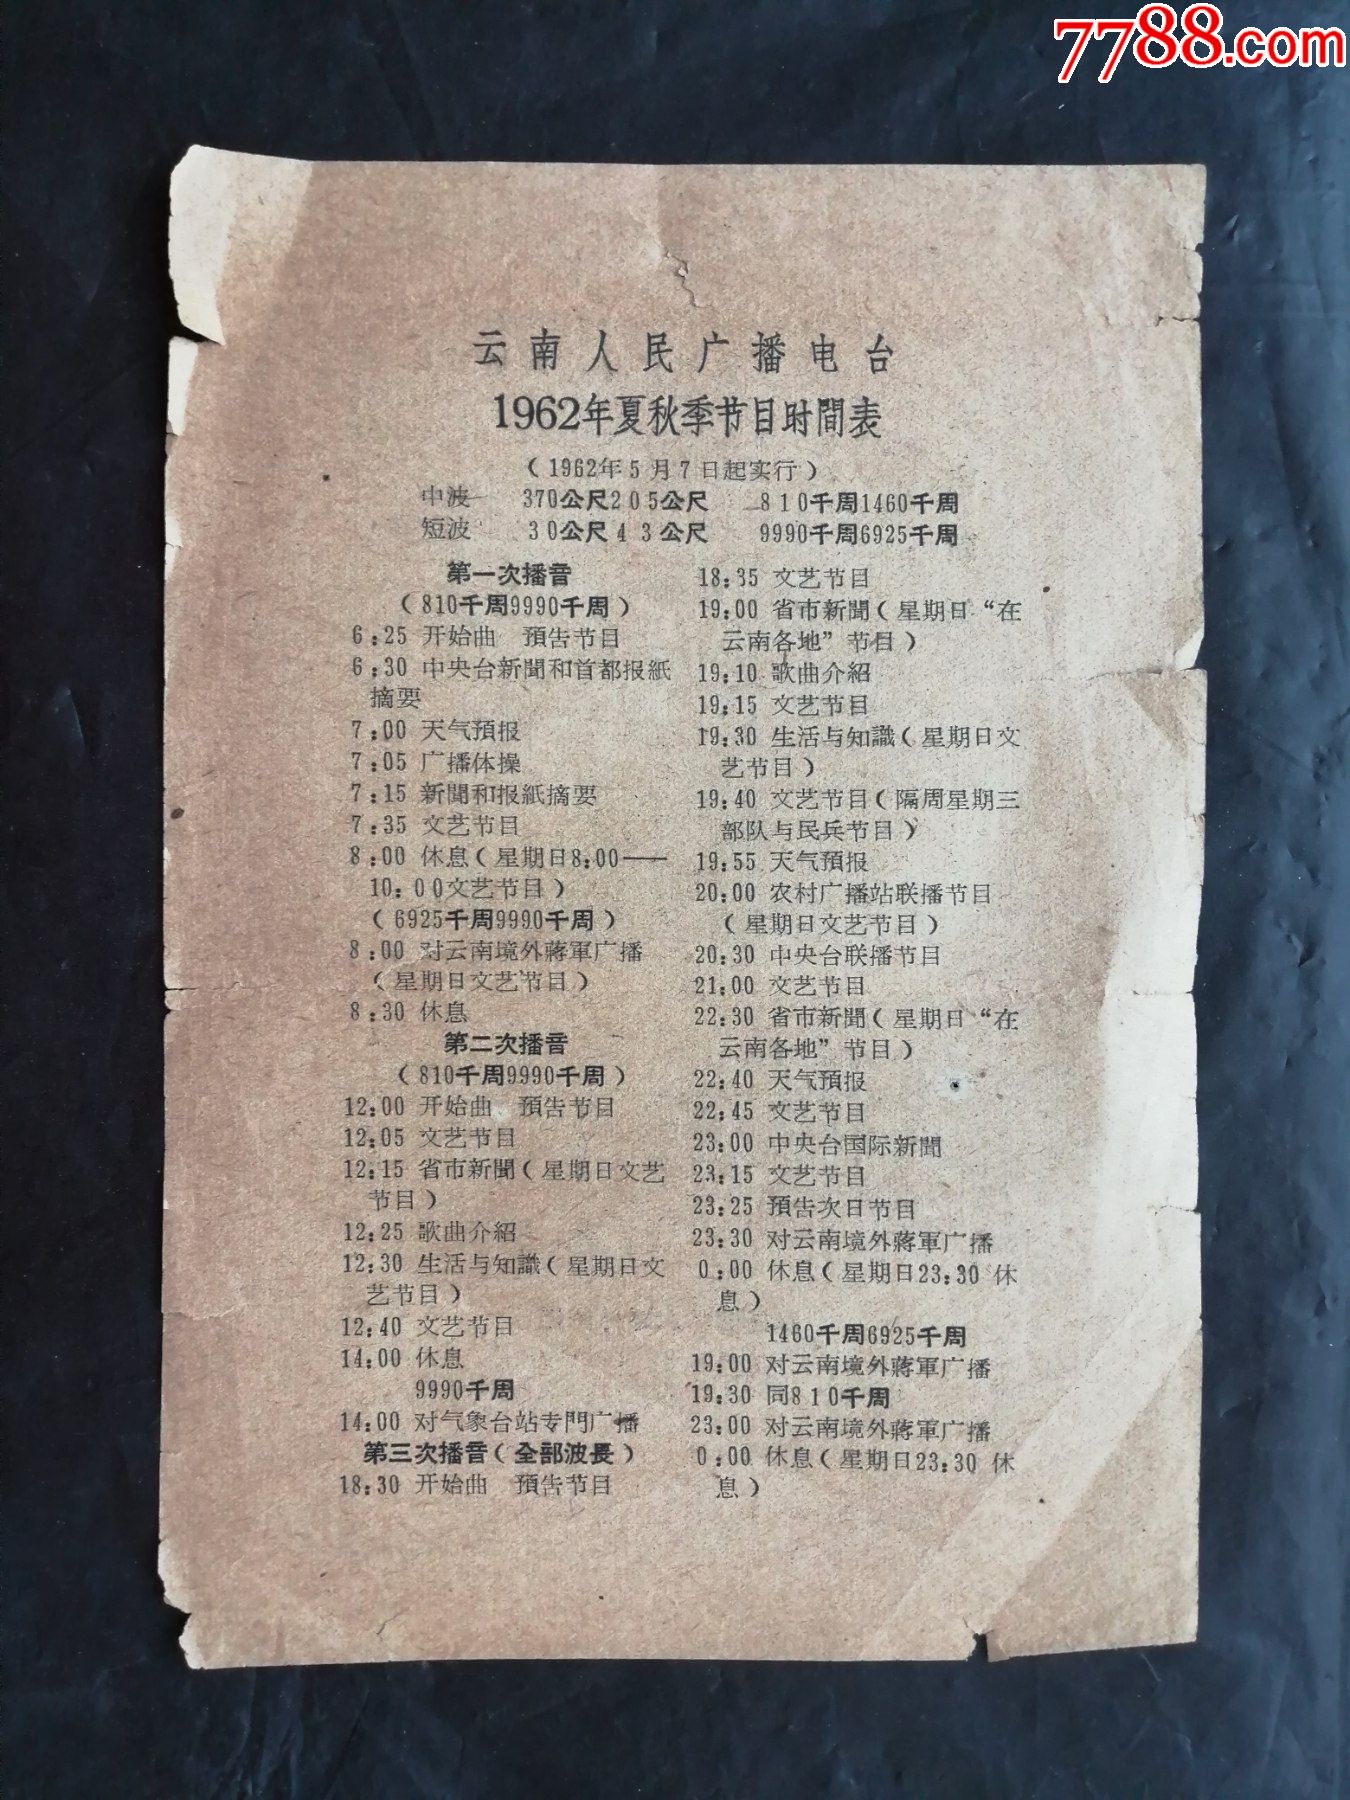 云南人民广播电台节目时间表,1962年,1张正反面